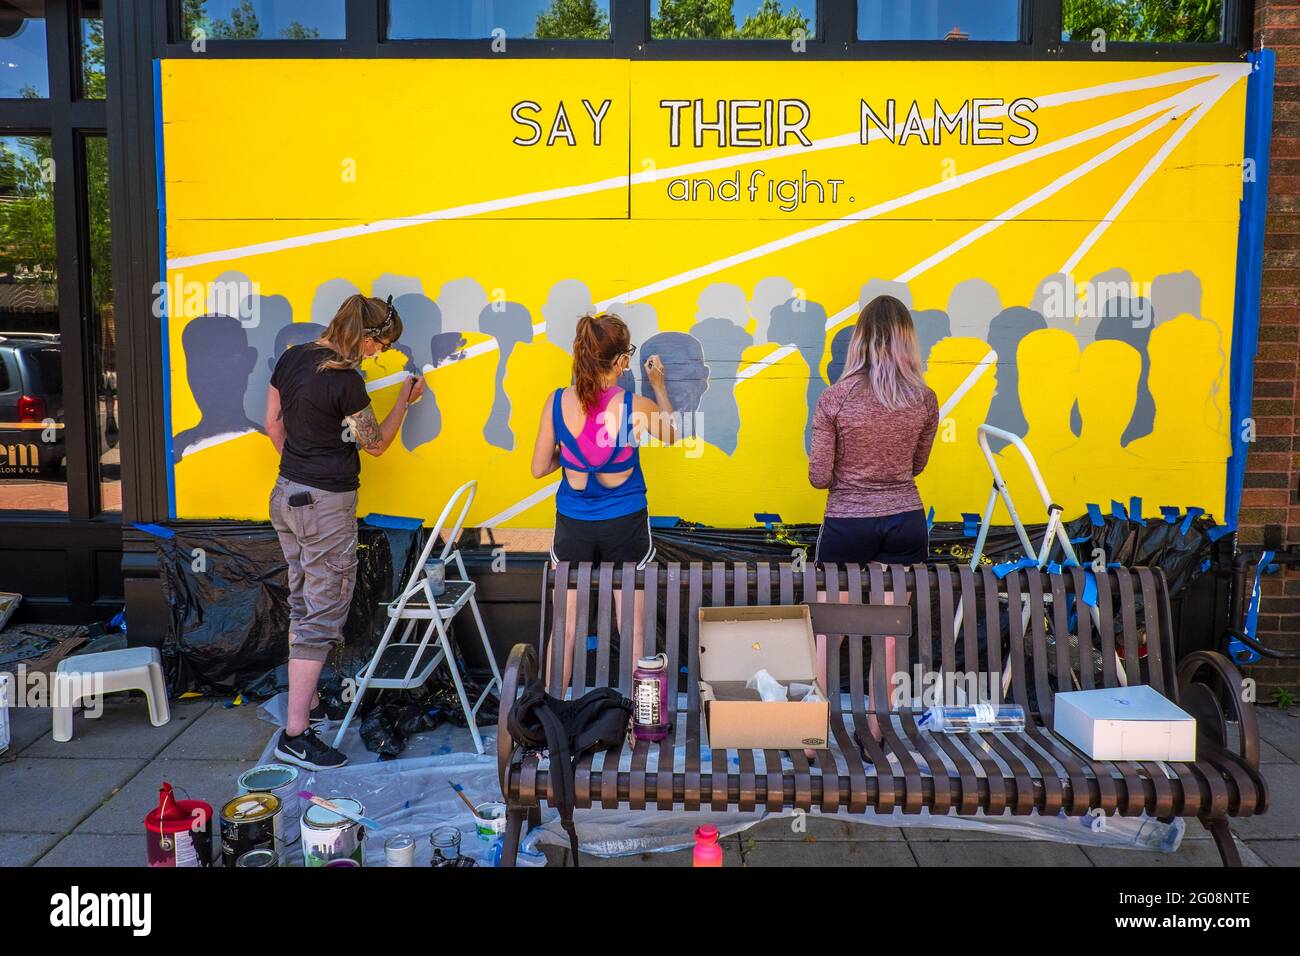 Des femmes peignent une fresque lors des manifestations de George Floyd, St. Paul, Minnesota, États-Unis Banque D'Images